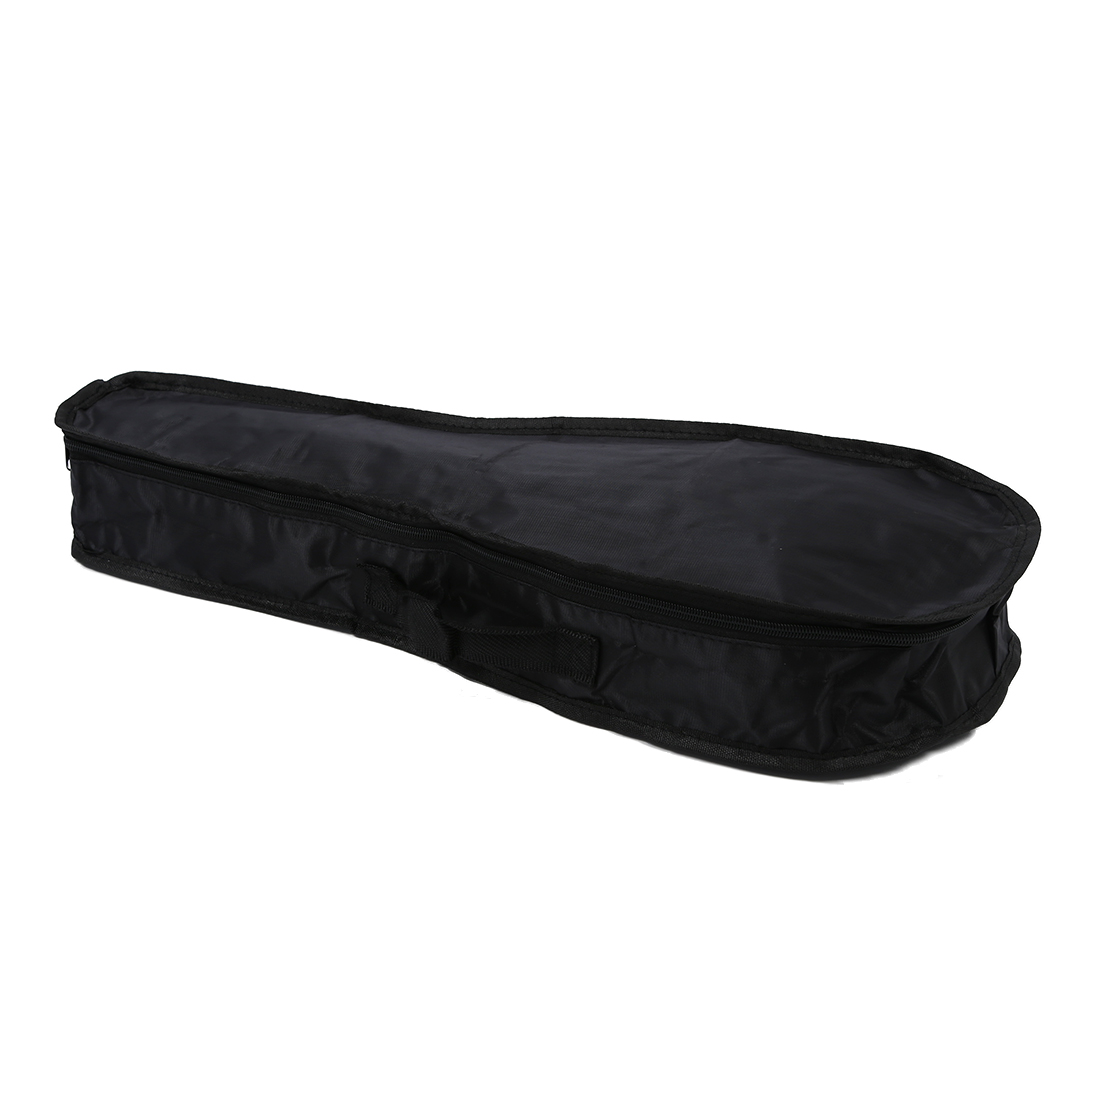 MA-70 case bag strap box Pack waterproof for Ukulele Ukulele cover